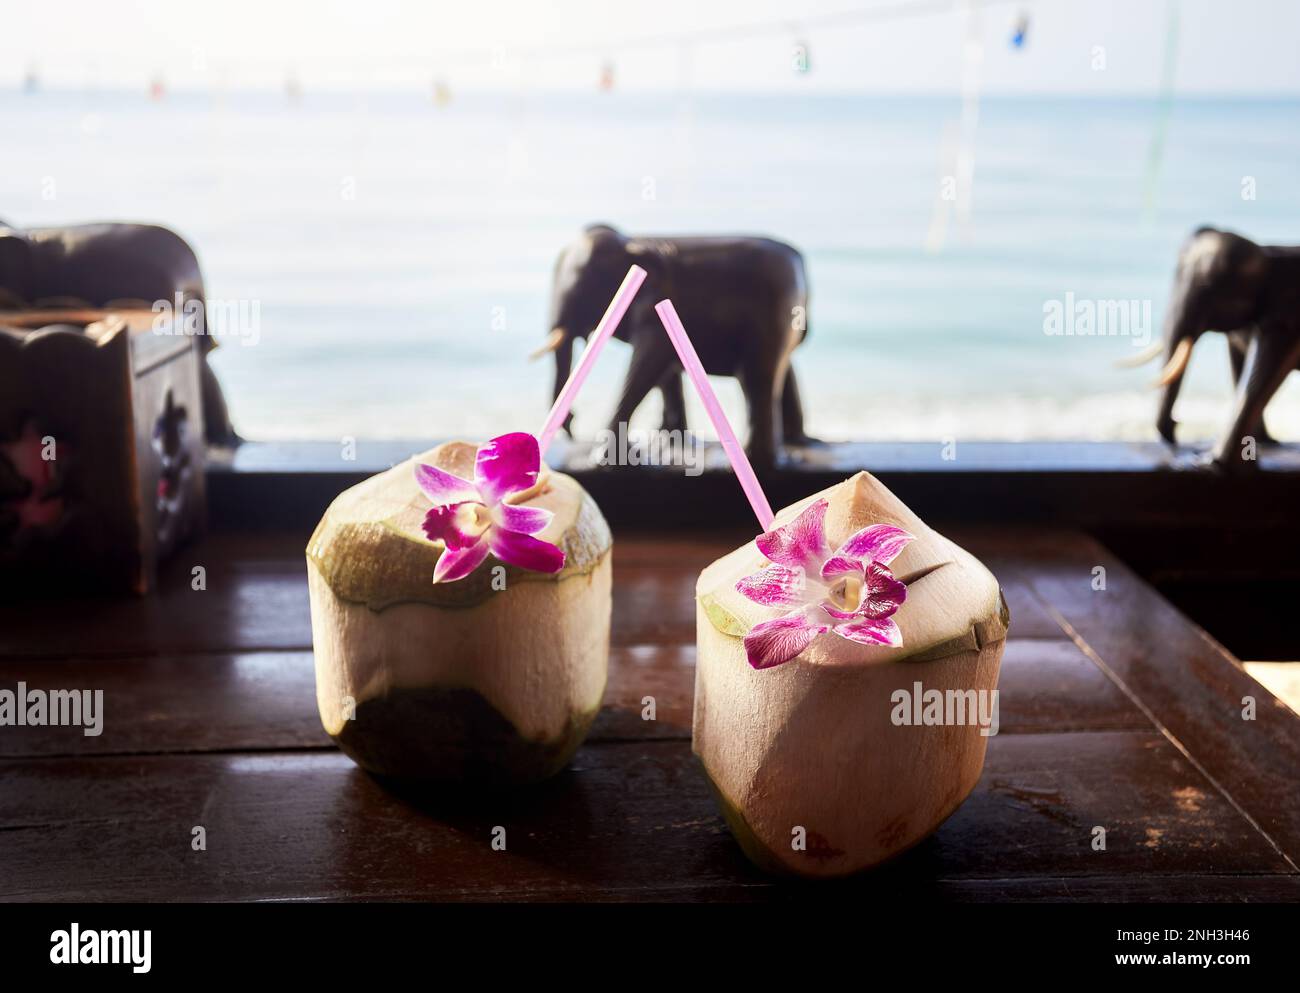 Due dolci noci di cocco fresche con paglia con fiori rosa al ristorante con decorazione in legno elefanti sulla spiaggia con vista dell'oceano all'alba. Foto Stock